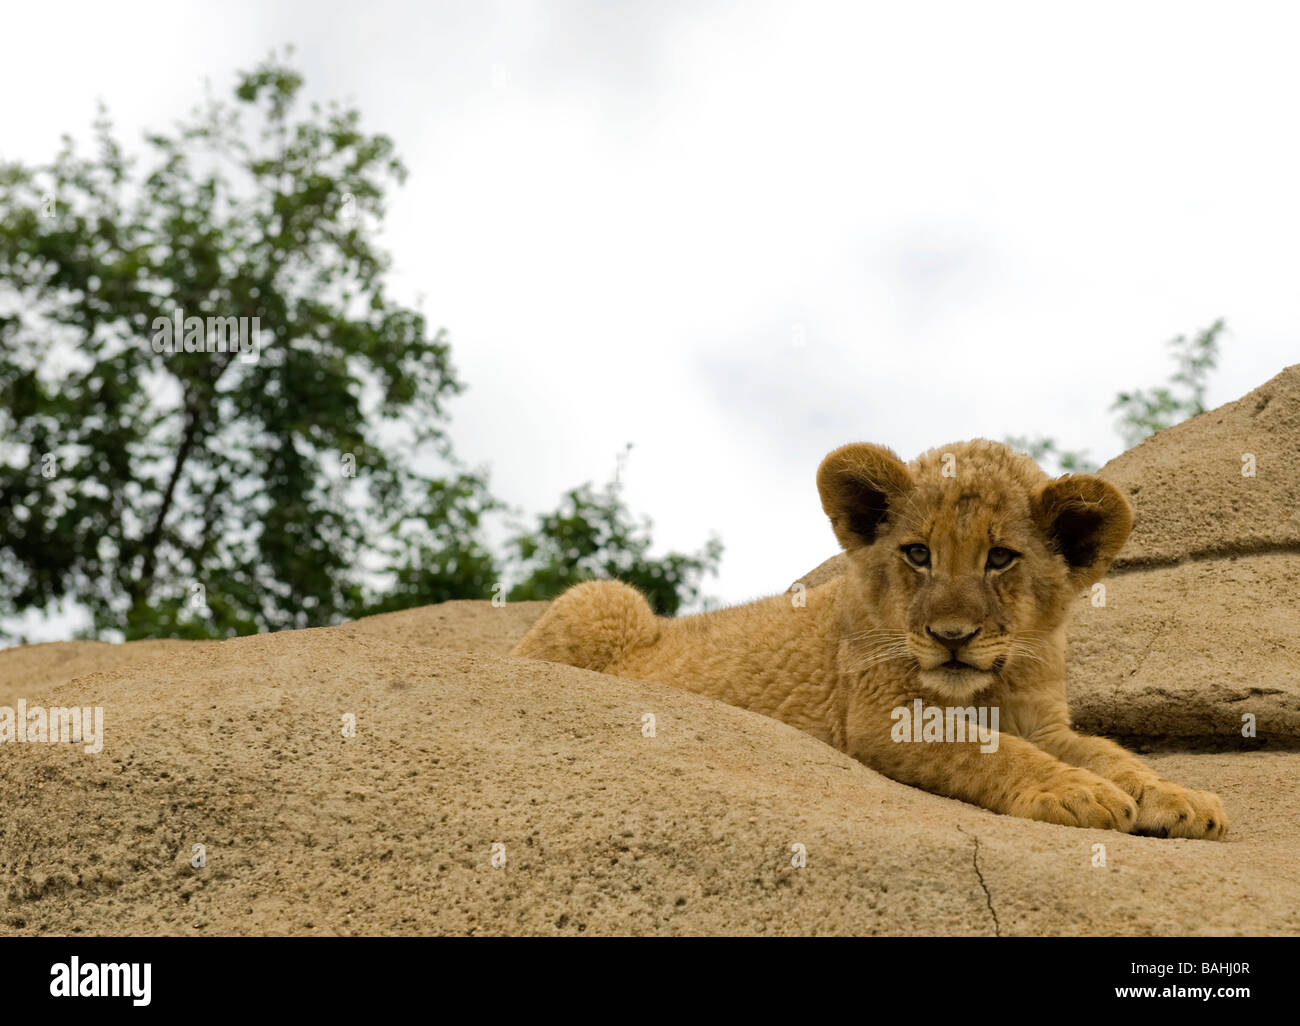 Lindo bebé cachorro de león descansando sobre una roca en el sur de África. Foto de stock